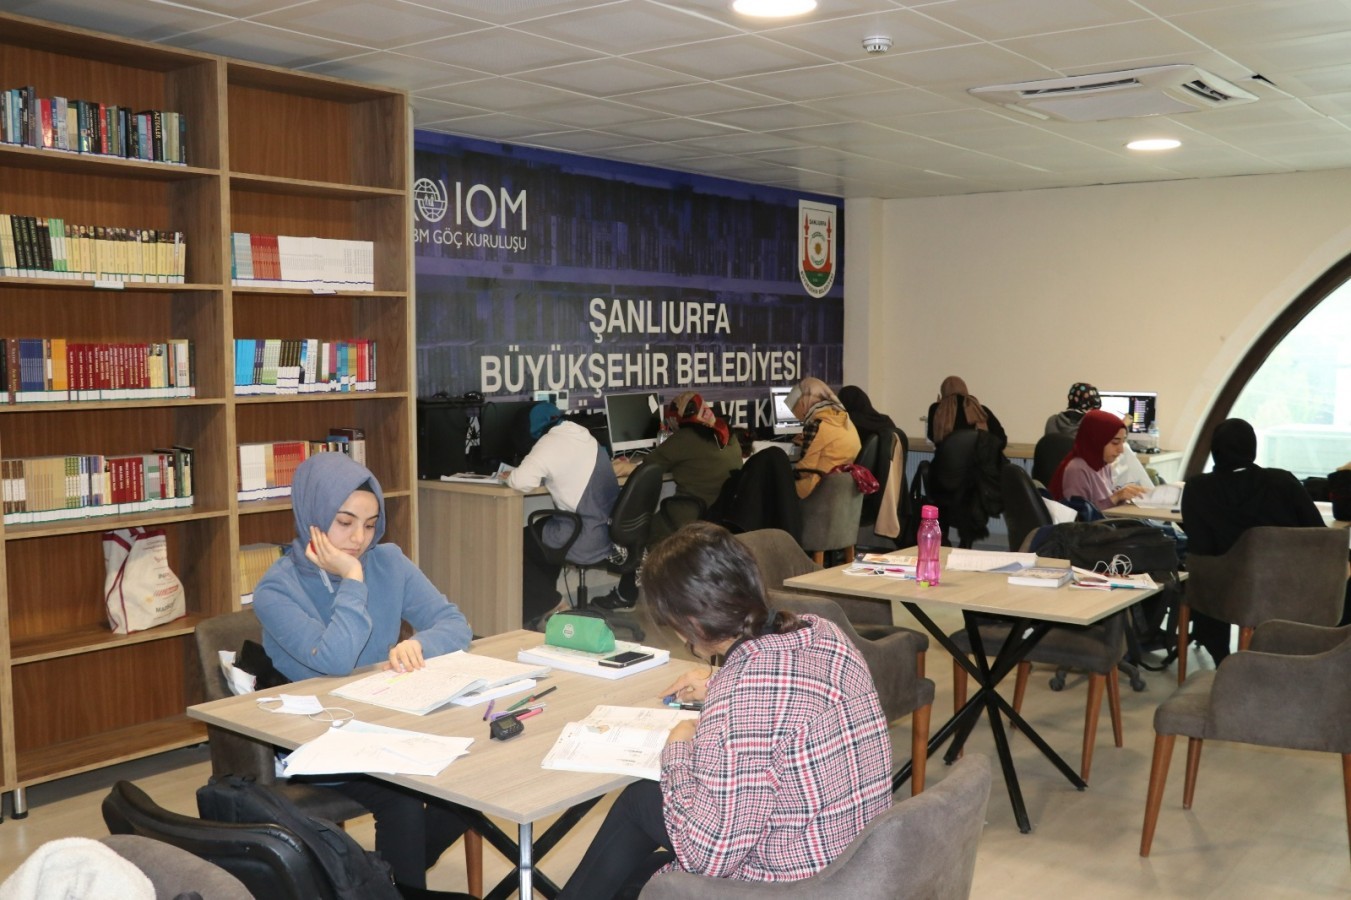 Şanlıurfa Büyükşehir Belediyesi Kütüphaneleri Öğrencilerin Merkezi Oldu;